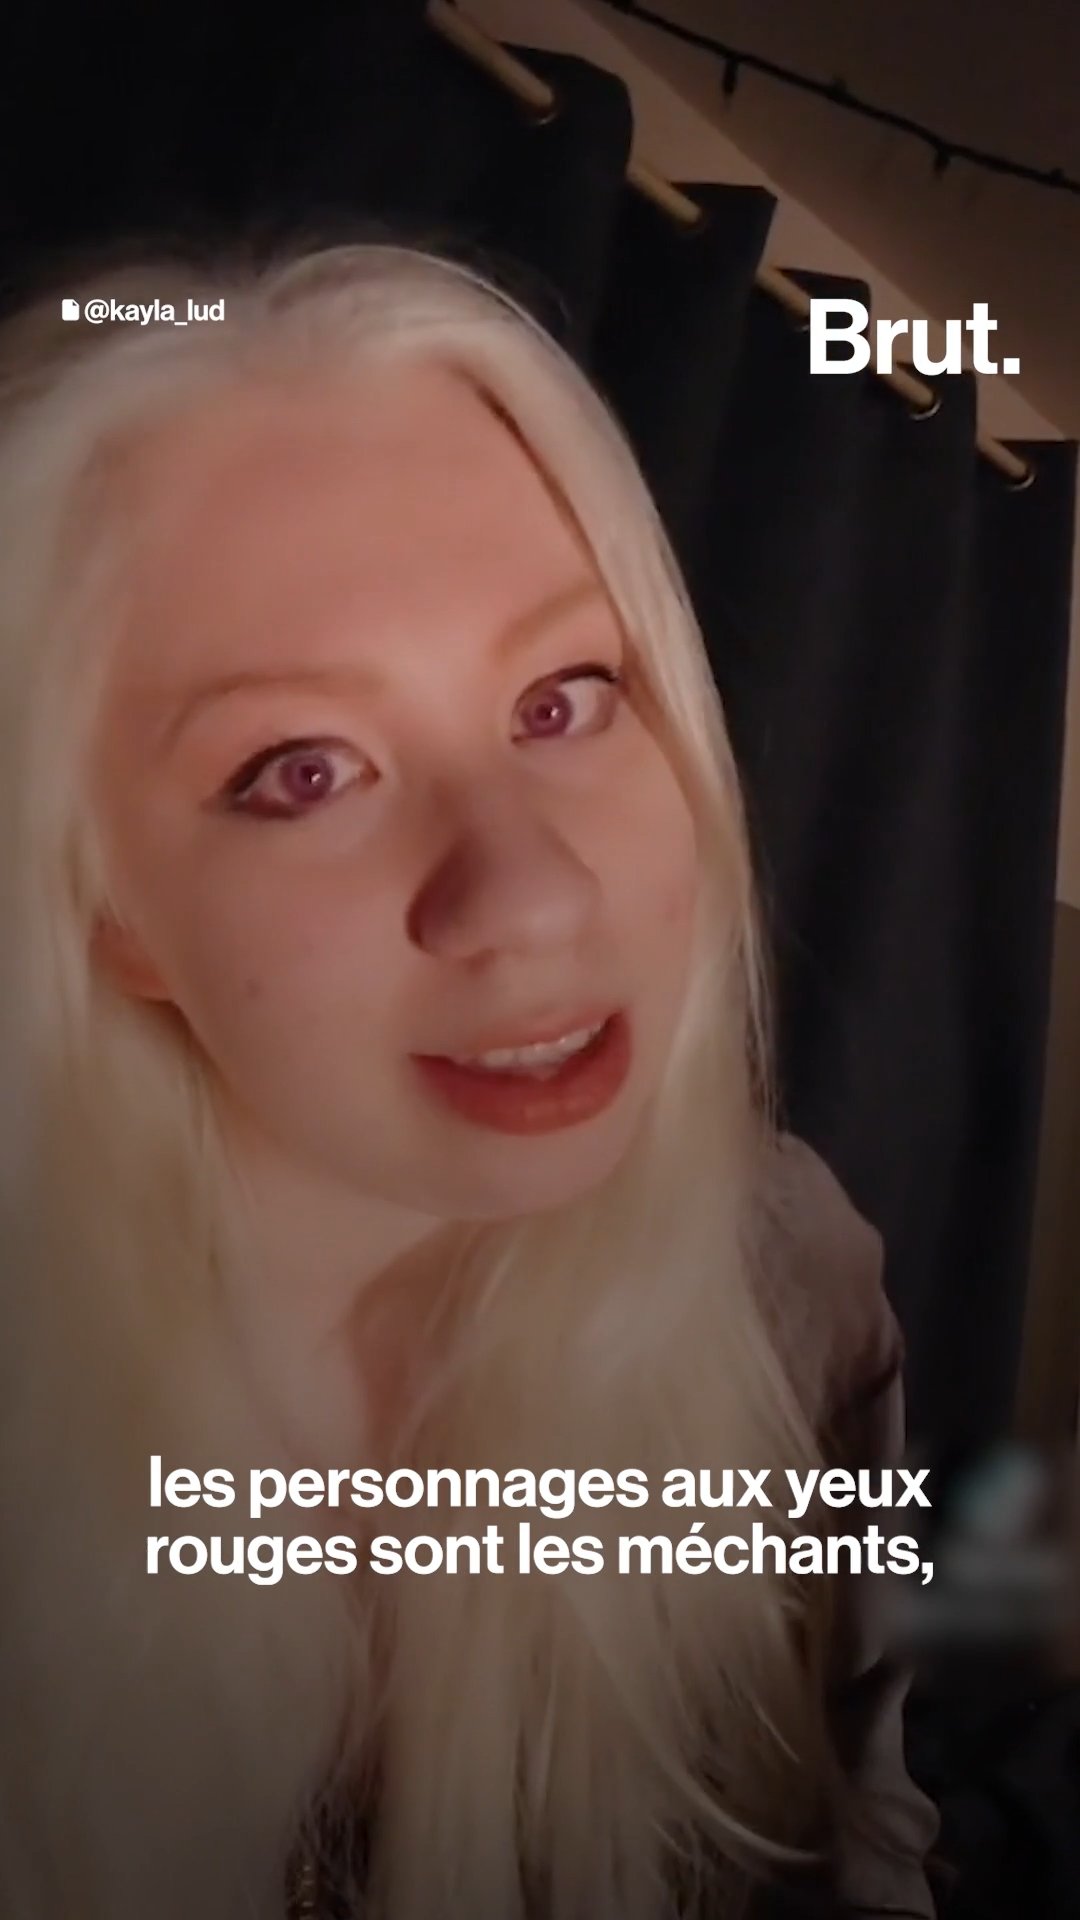 Jane Levy Anal Porn - Albinos, ils parlent de leur maladie sur les rÃ©seaux sociaux - L'ABESTIT